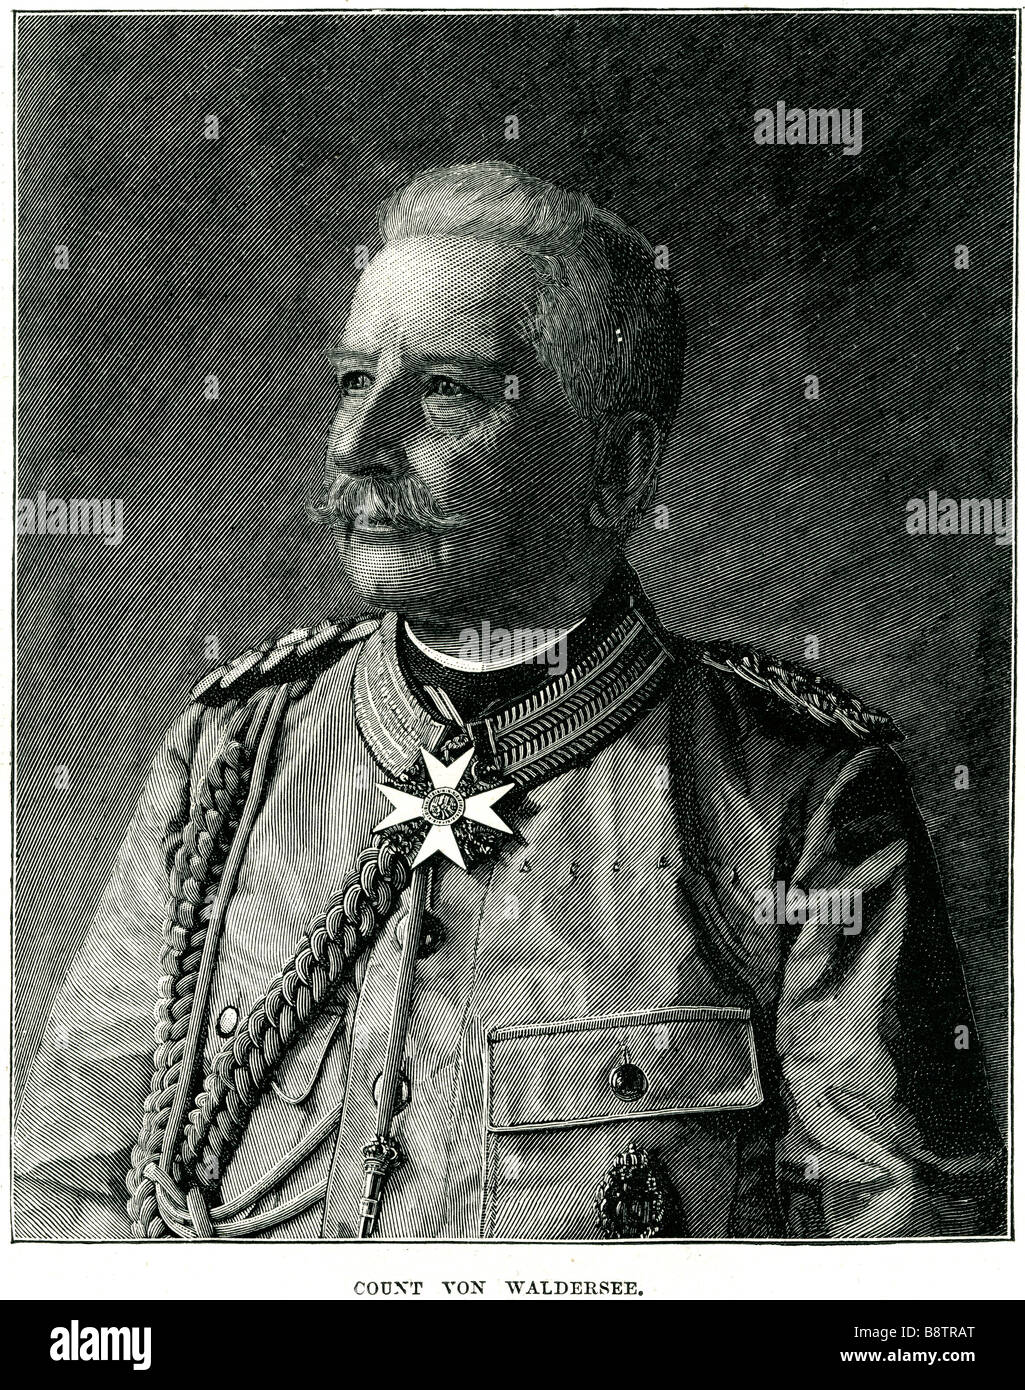 Count Von Waldersee Alfred Graf von Waldersee (8 April 1832 - 5 March 1904) was a German Generalfeldmarschall who served as Chie Stock Photo